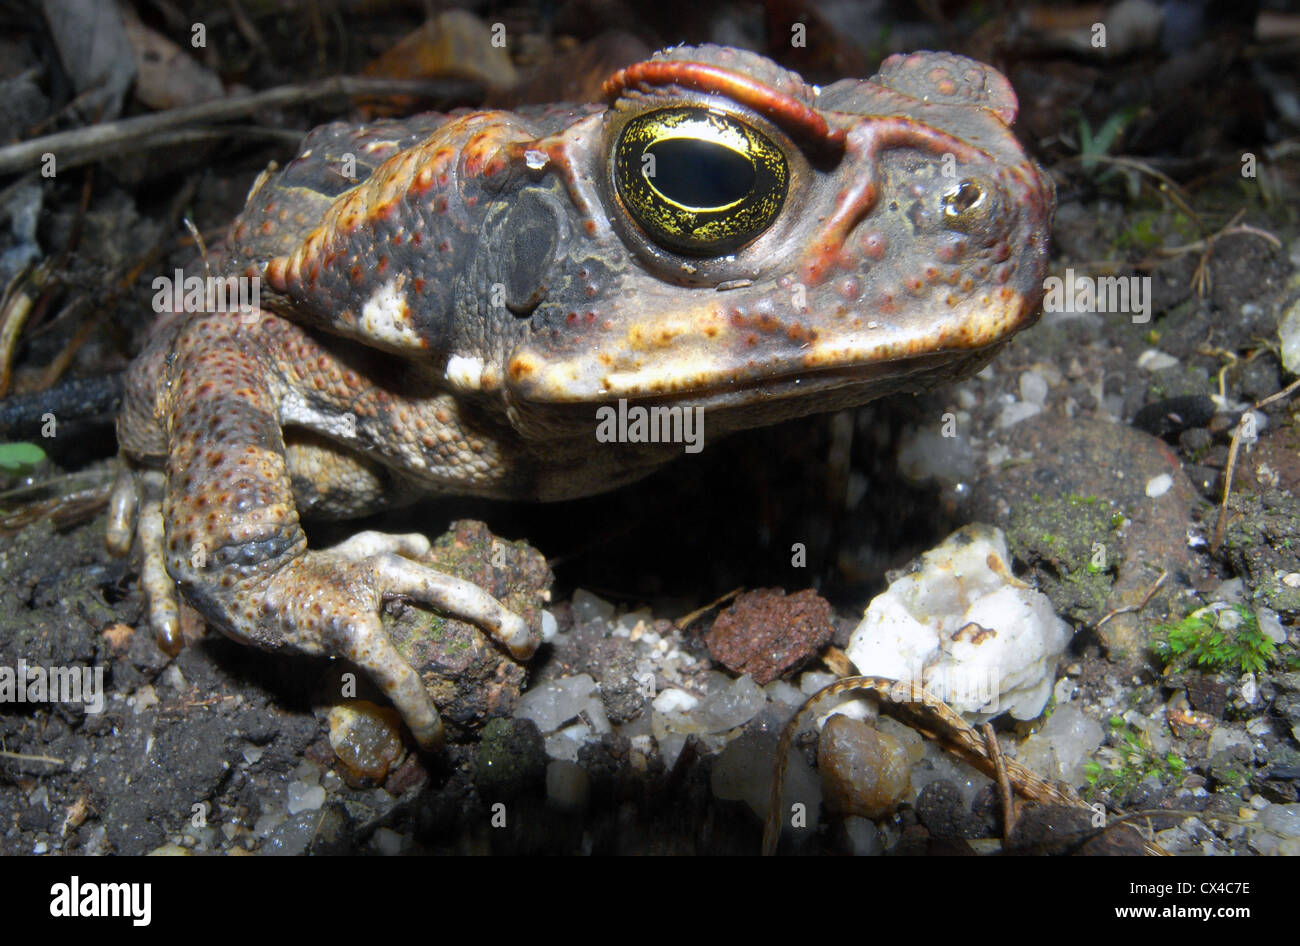 Cane toad (Bufo marinus aka Rhinella marinus), un ravageur envahissant dans le nord de l'Australie Banque D'Images